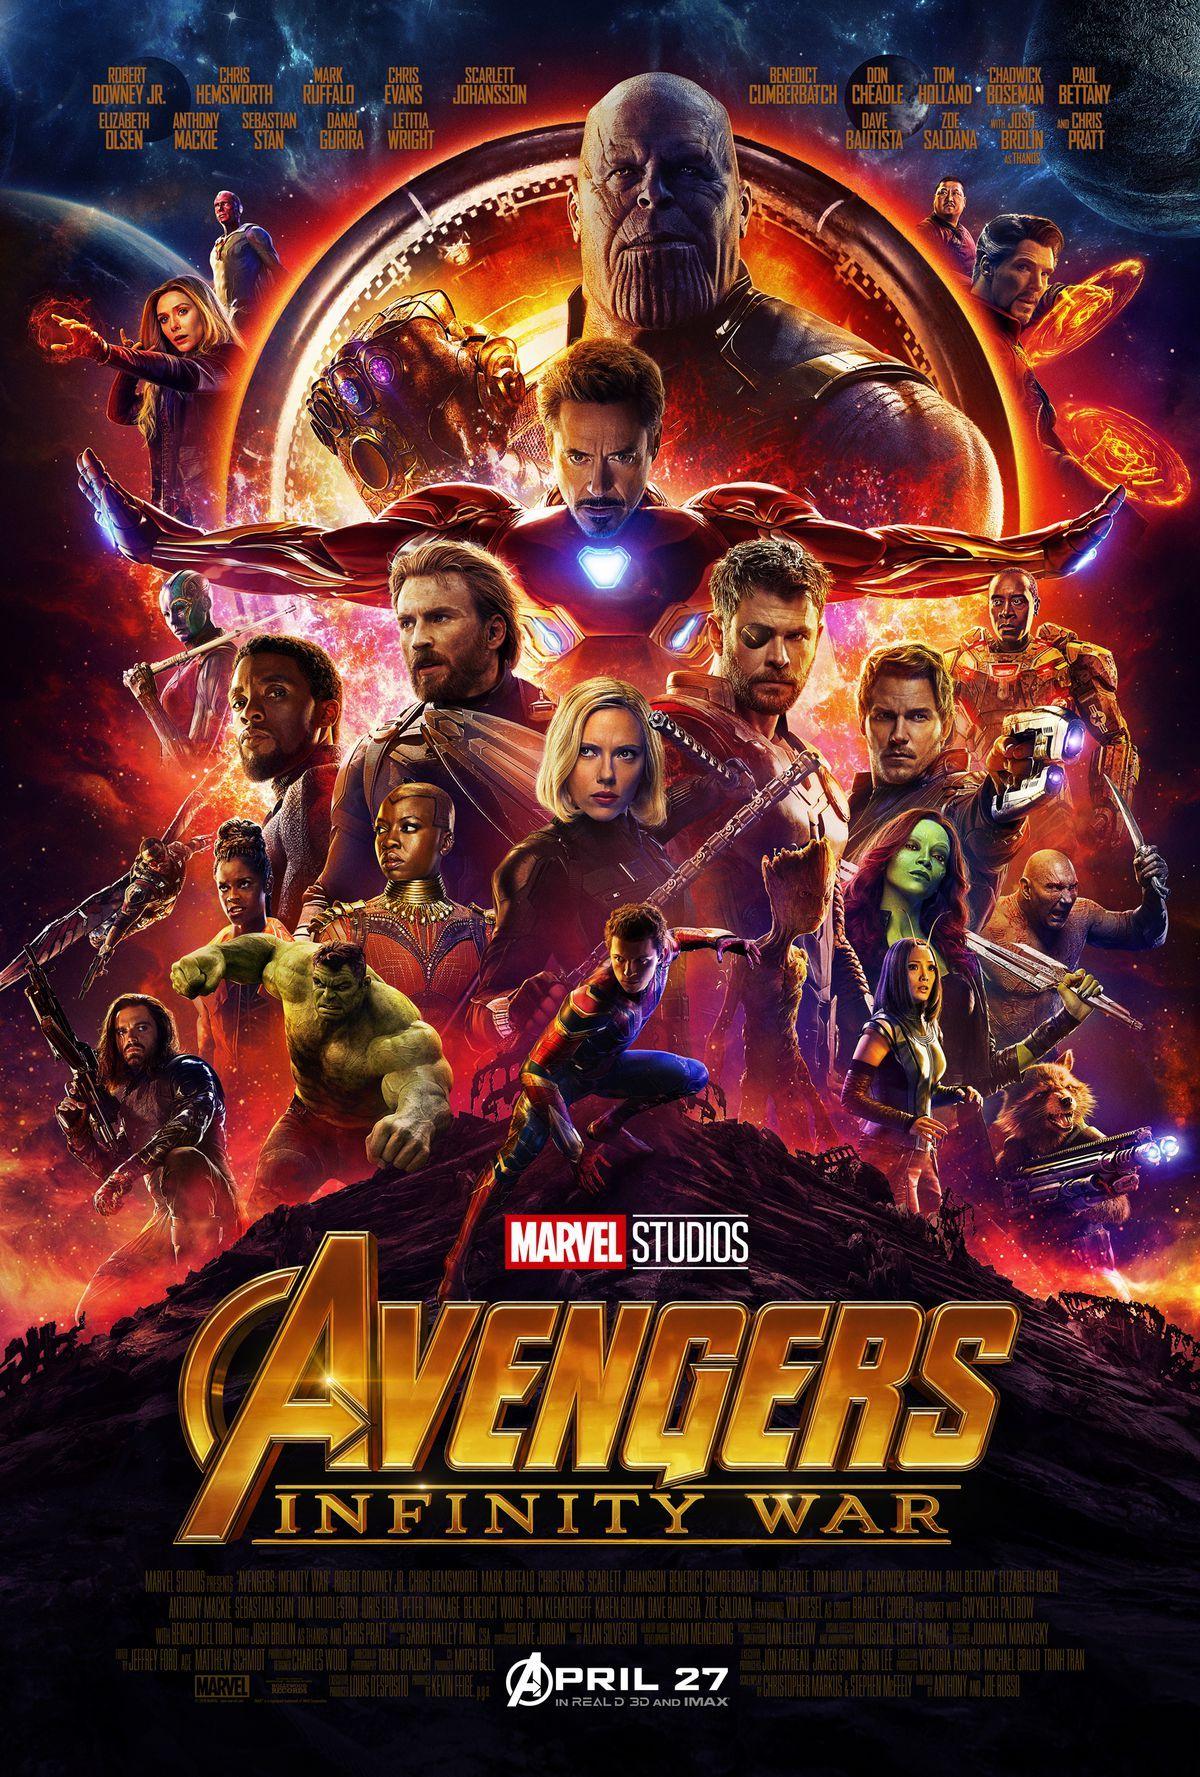 Avengers: Endgame Cast Characters 4K Wallpaper #59